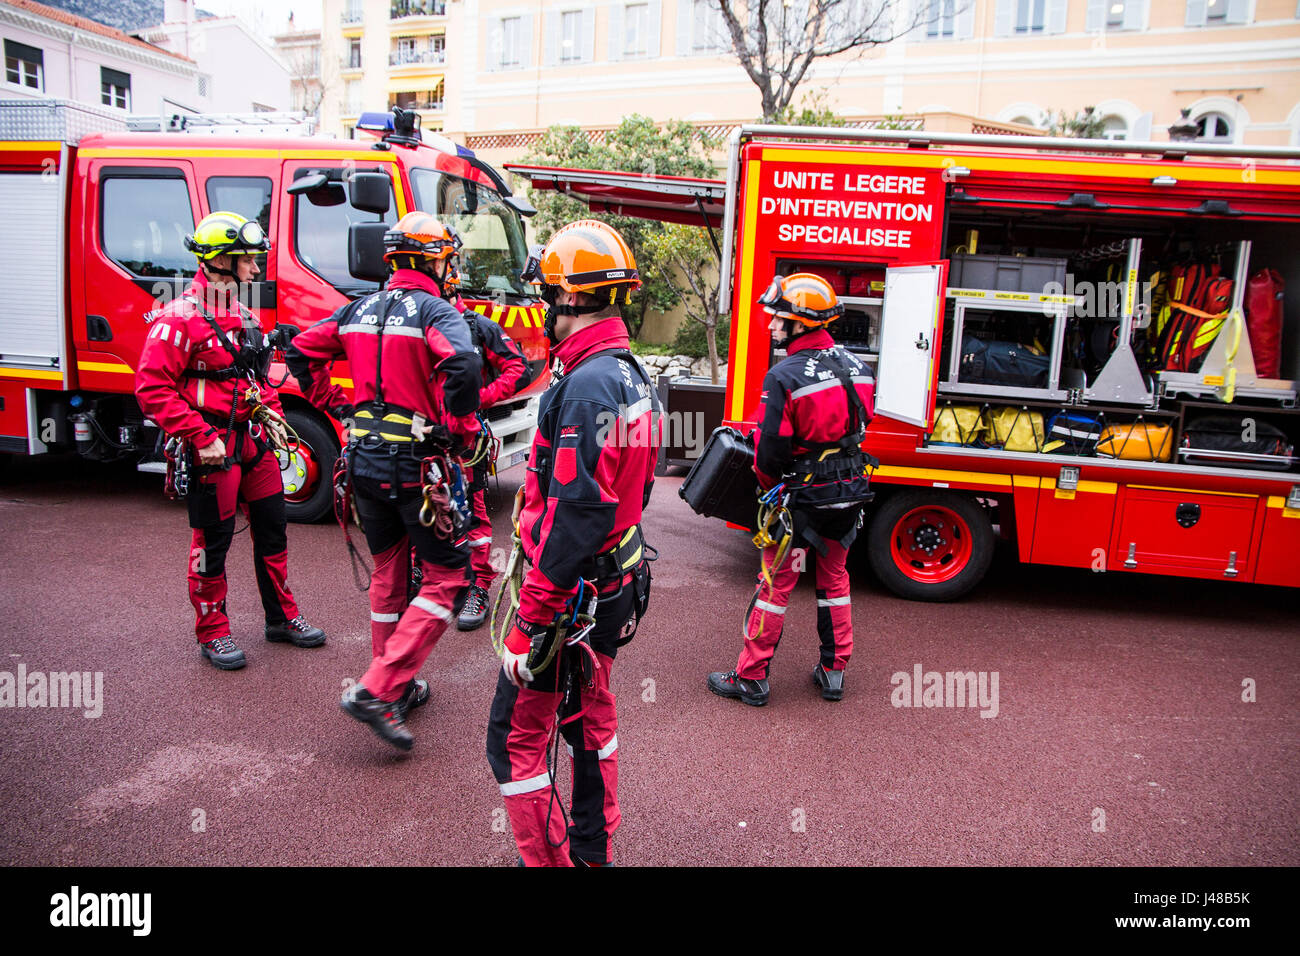 Esta unidad de intervención especializada de la Corps des Sapeurs-Pompiers de Mónaco se prepara para un taladro de rescate en Montecarlo, Mónaco. Foto de stock